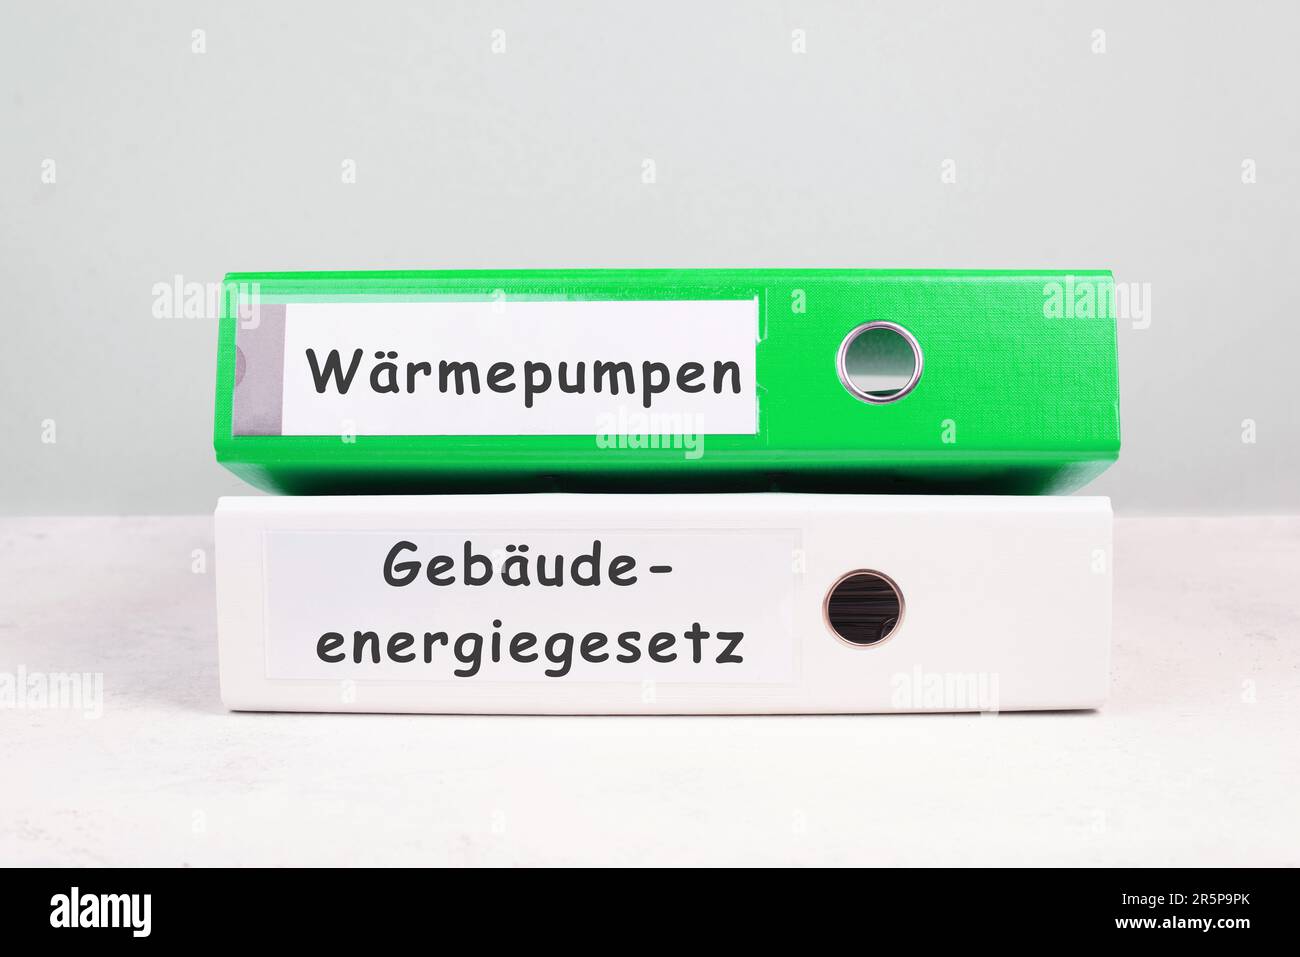 Wärmepumpen, New Building Energy Act steht in deutscher Sprache auf den Mappen, Klimaschutzpolitik zur Reduzierung der CO2-Emissionen Stockfoto